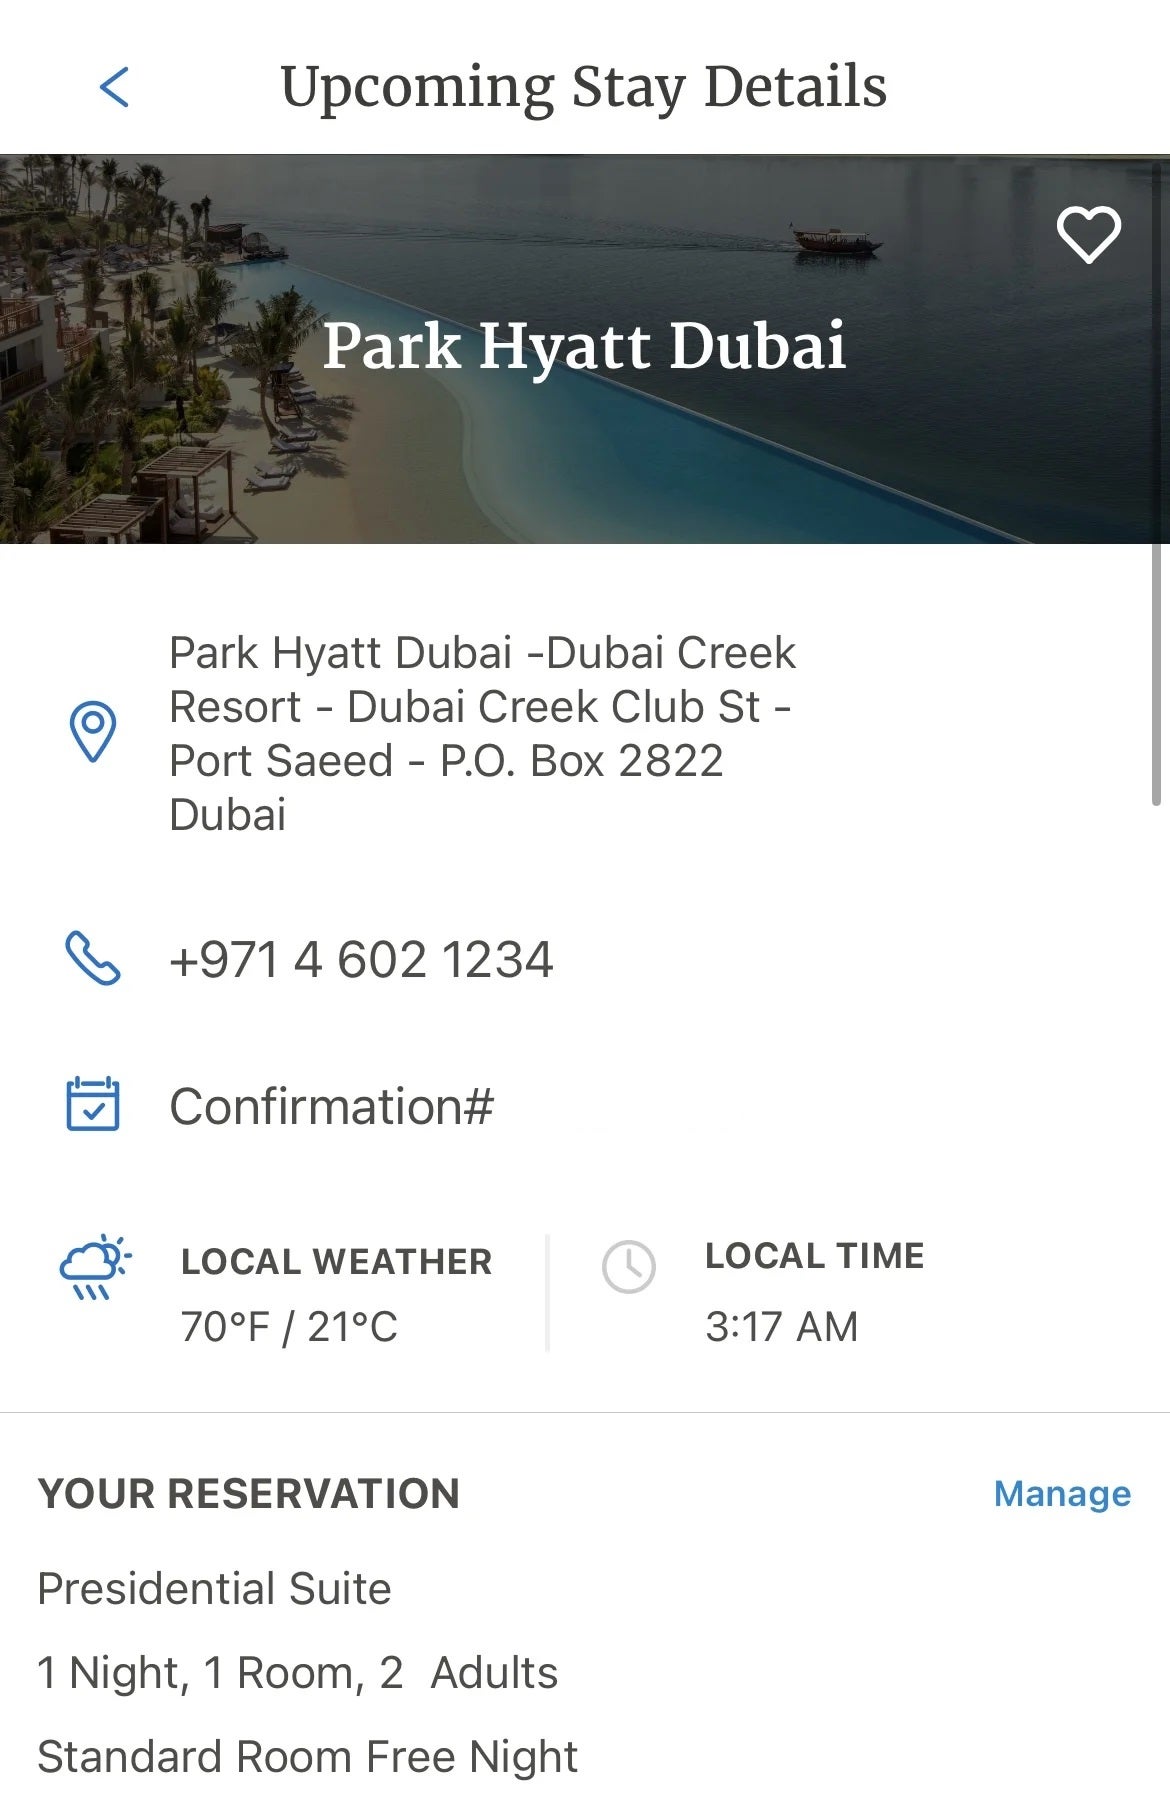 Park Hyatt Dubai Presidential Suite upgrade